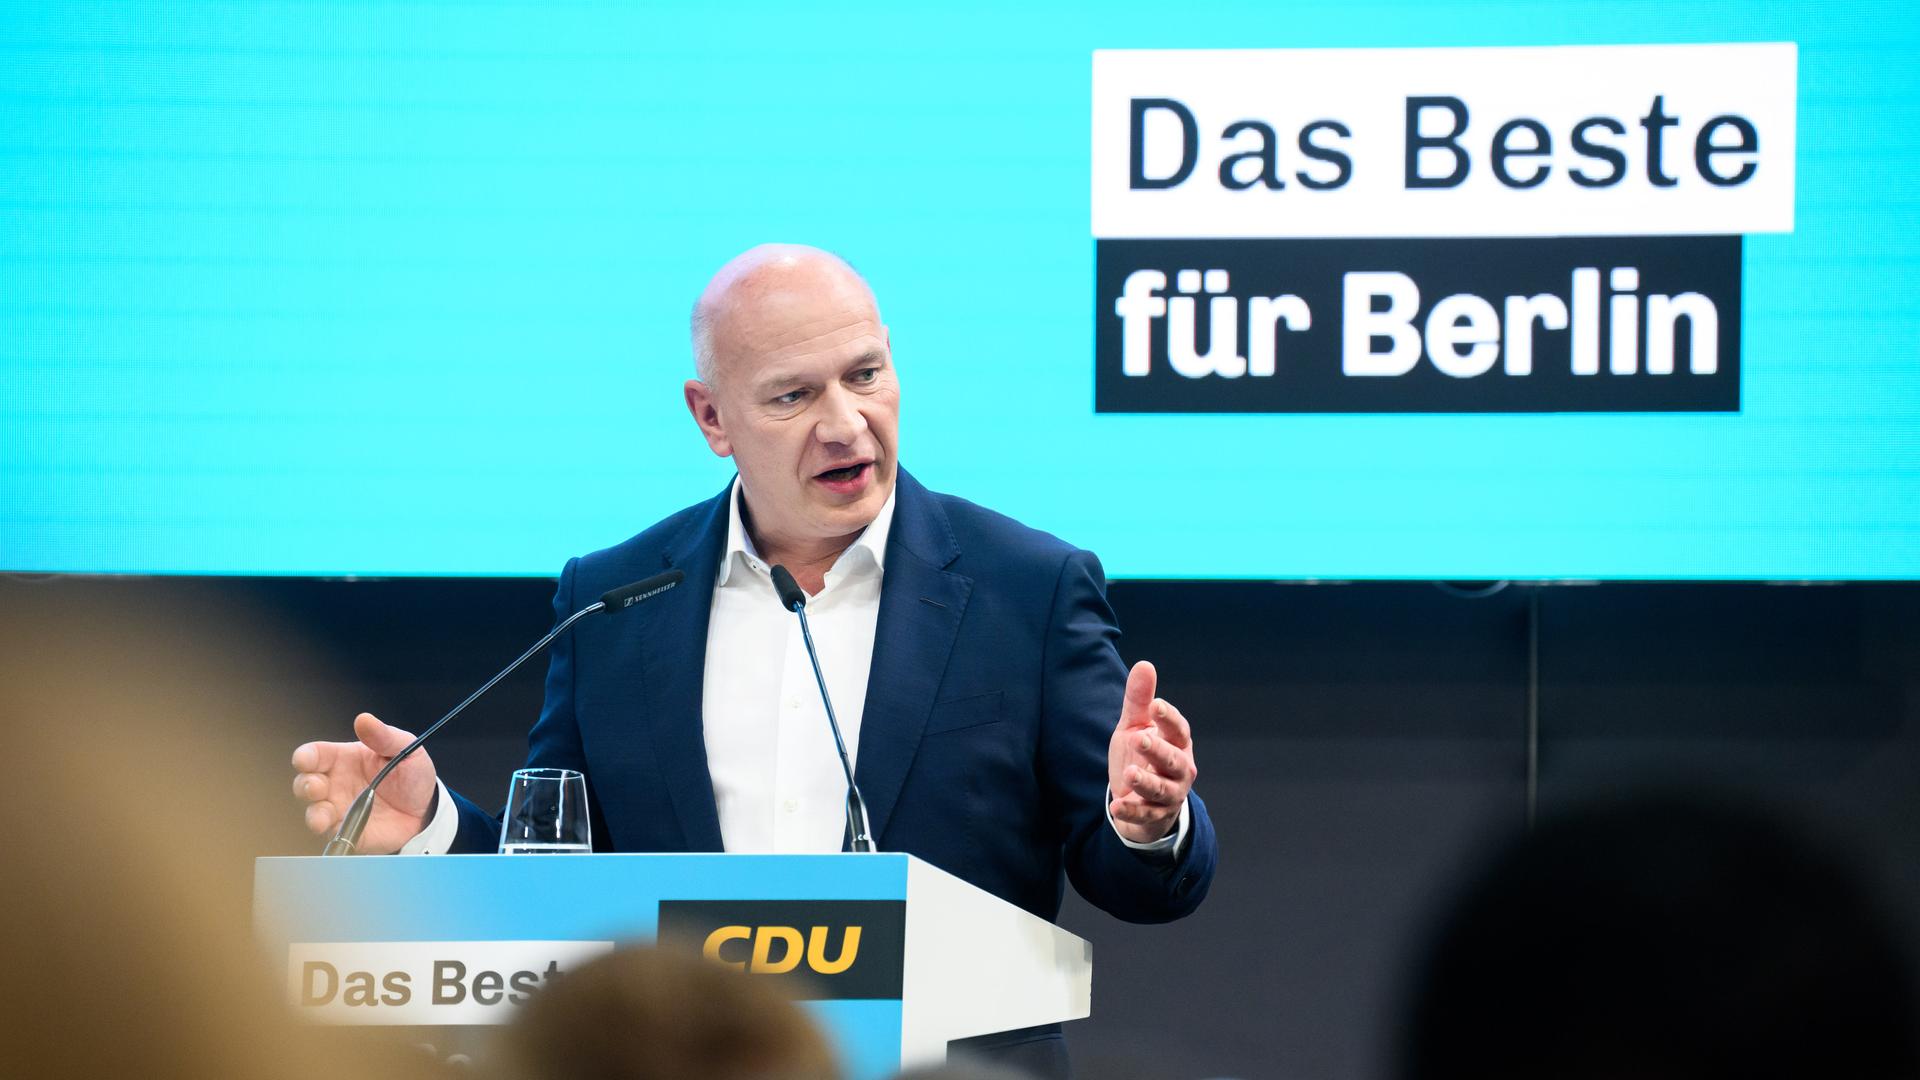 Kai Wegner steht an einem Redepult vor einem türkisfarbenen Hintergrund. Zu lesen ist der Slogan "Das Beste für Berlin".